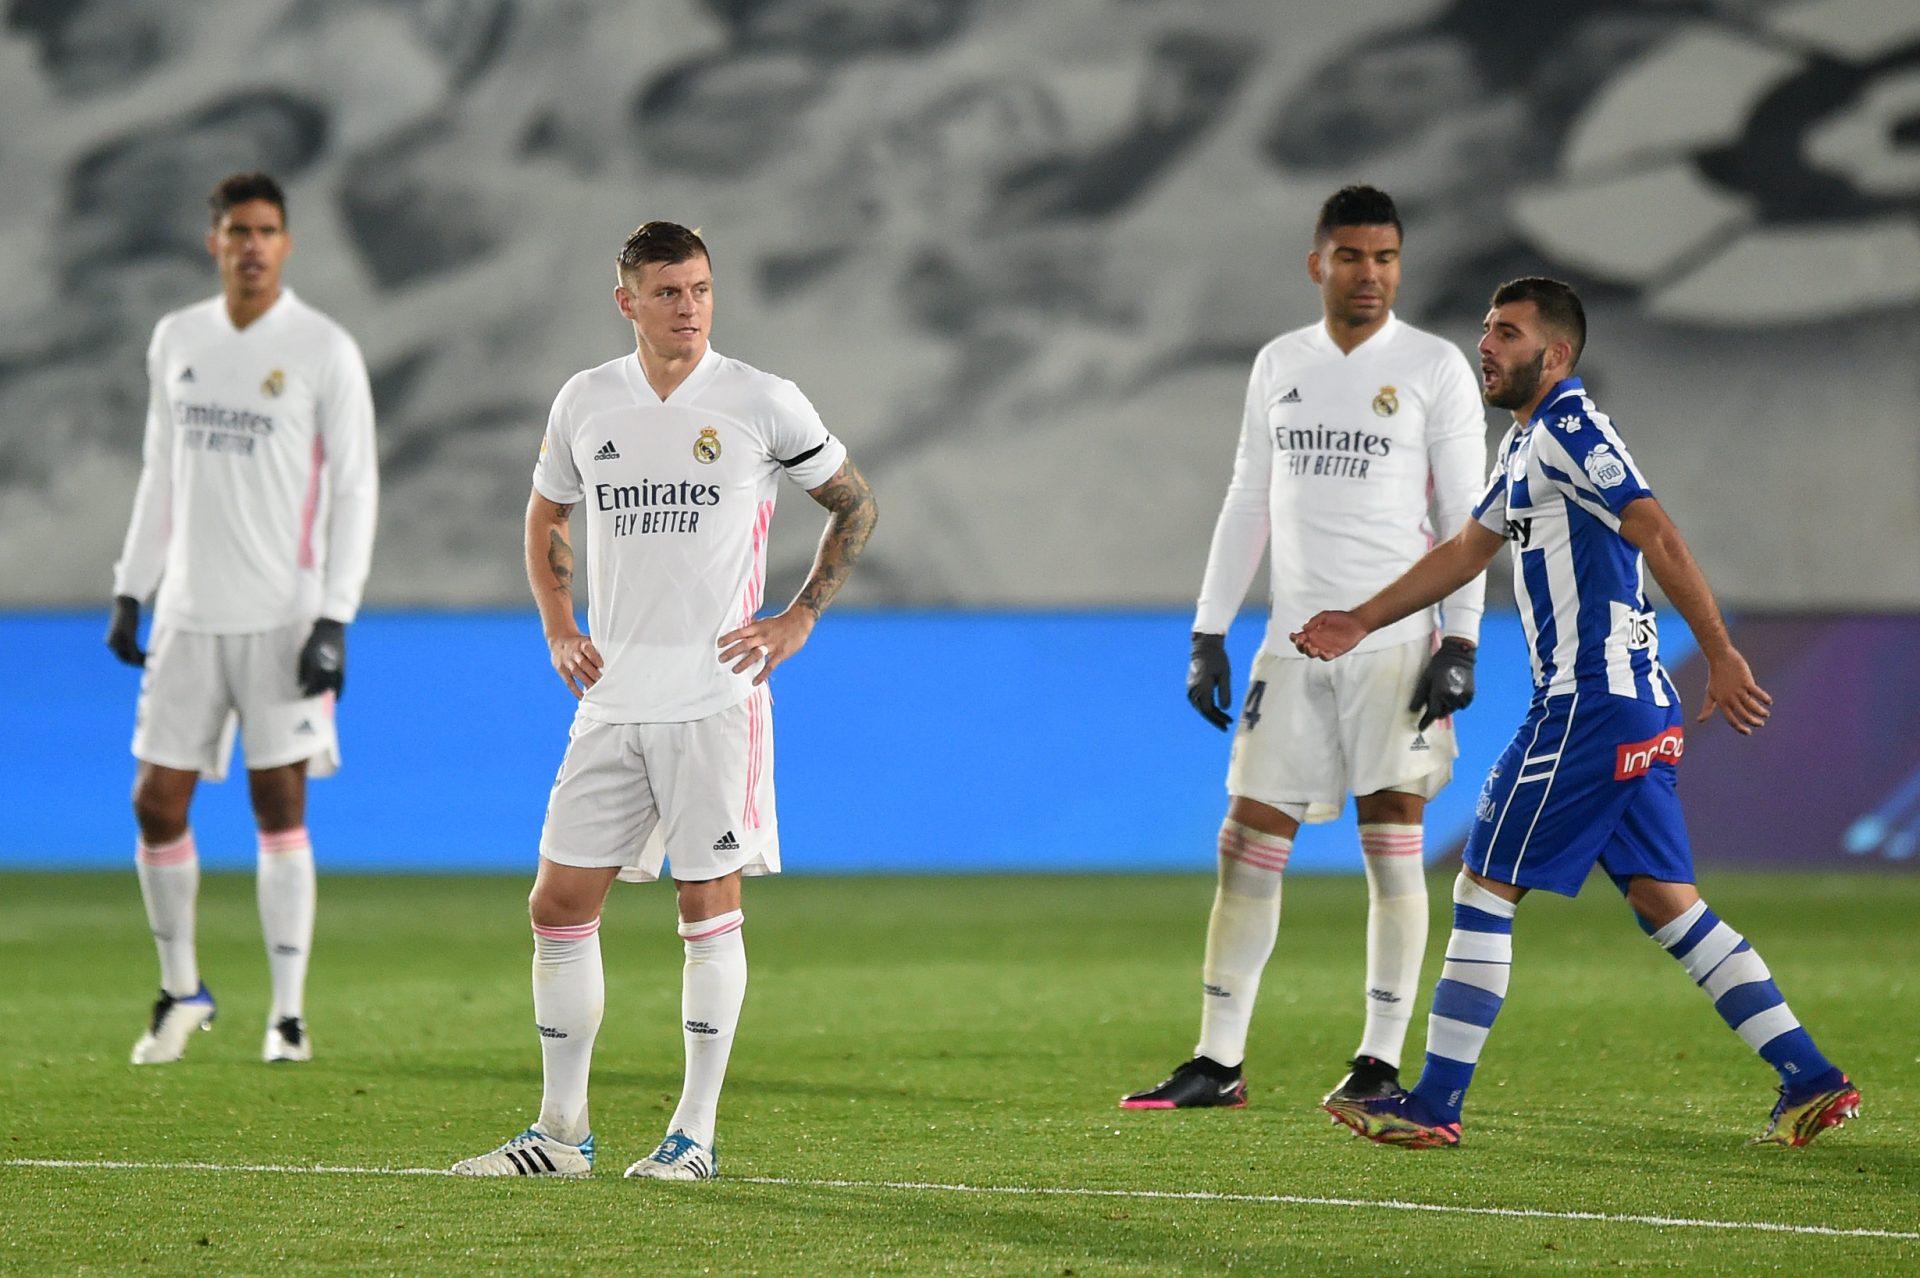 Los jugadores Del Real Madrid, que se enfrentarán al Sevilla FC el próximo sábado, se lamentan por un gol recibido